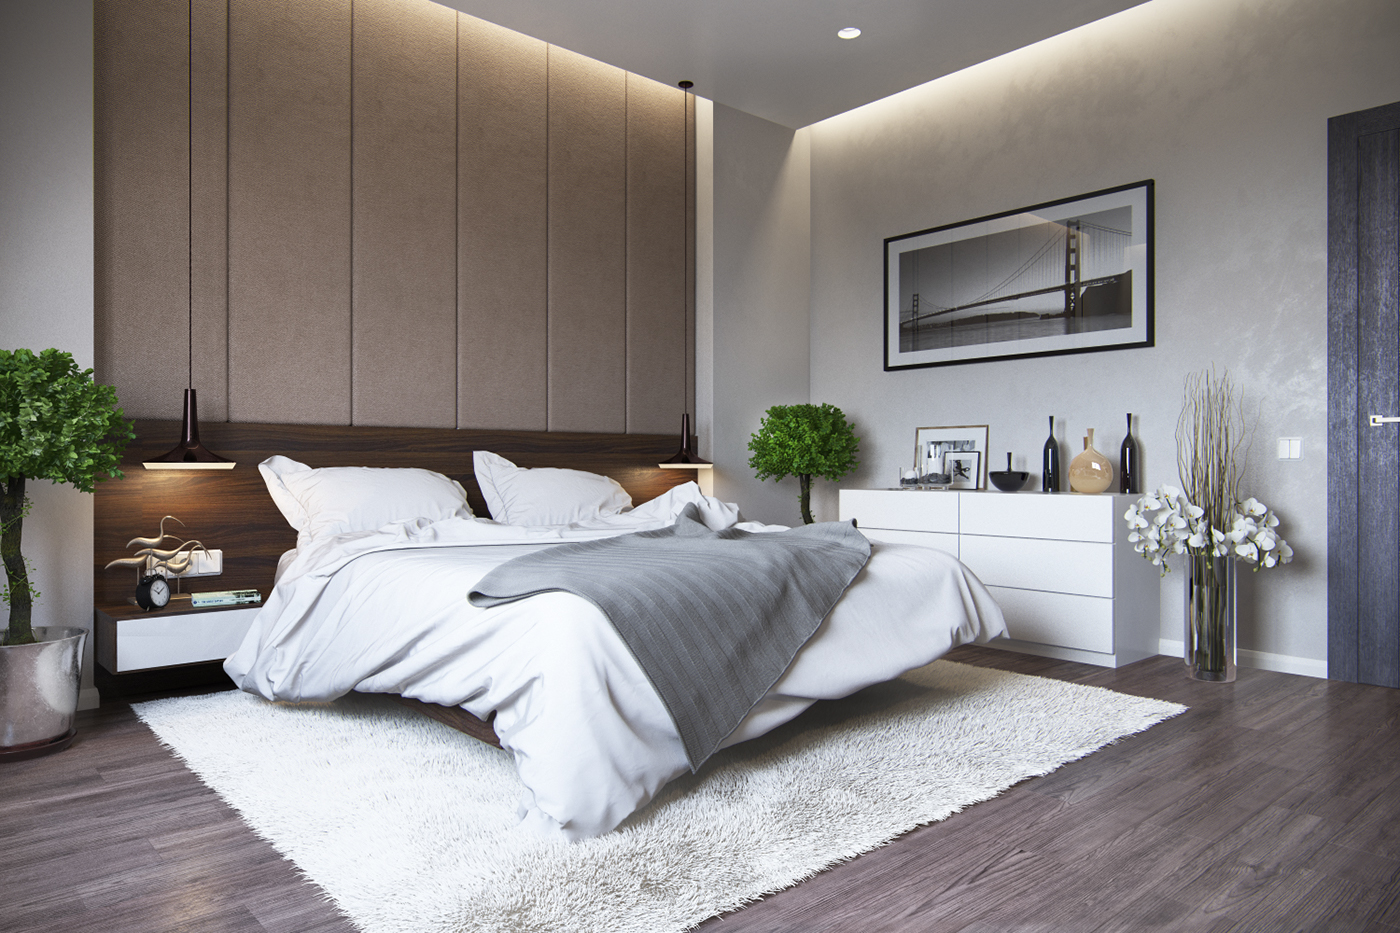 bedroom minimalistc modern dressing table